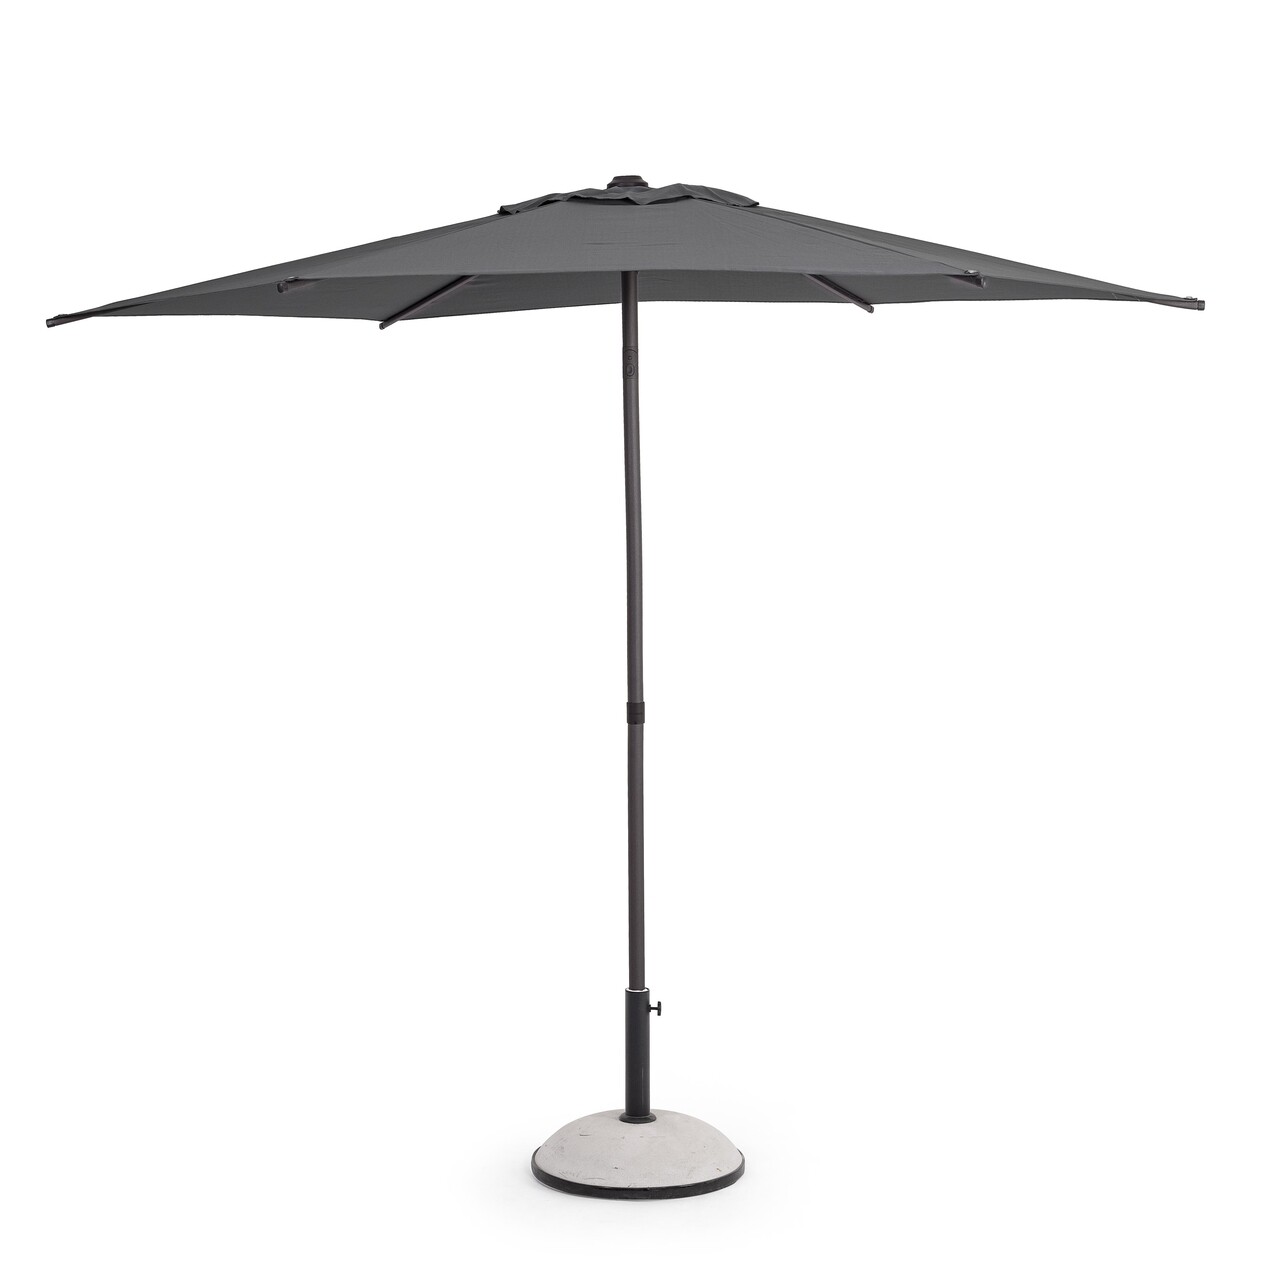 Samba Kerti/terasz napernyő, Bizzotto, Ø 270 cm, oszlop Ø 38 mm,acél/poliészter, sötétszürke